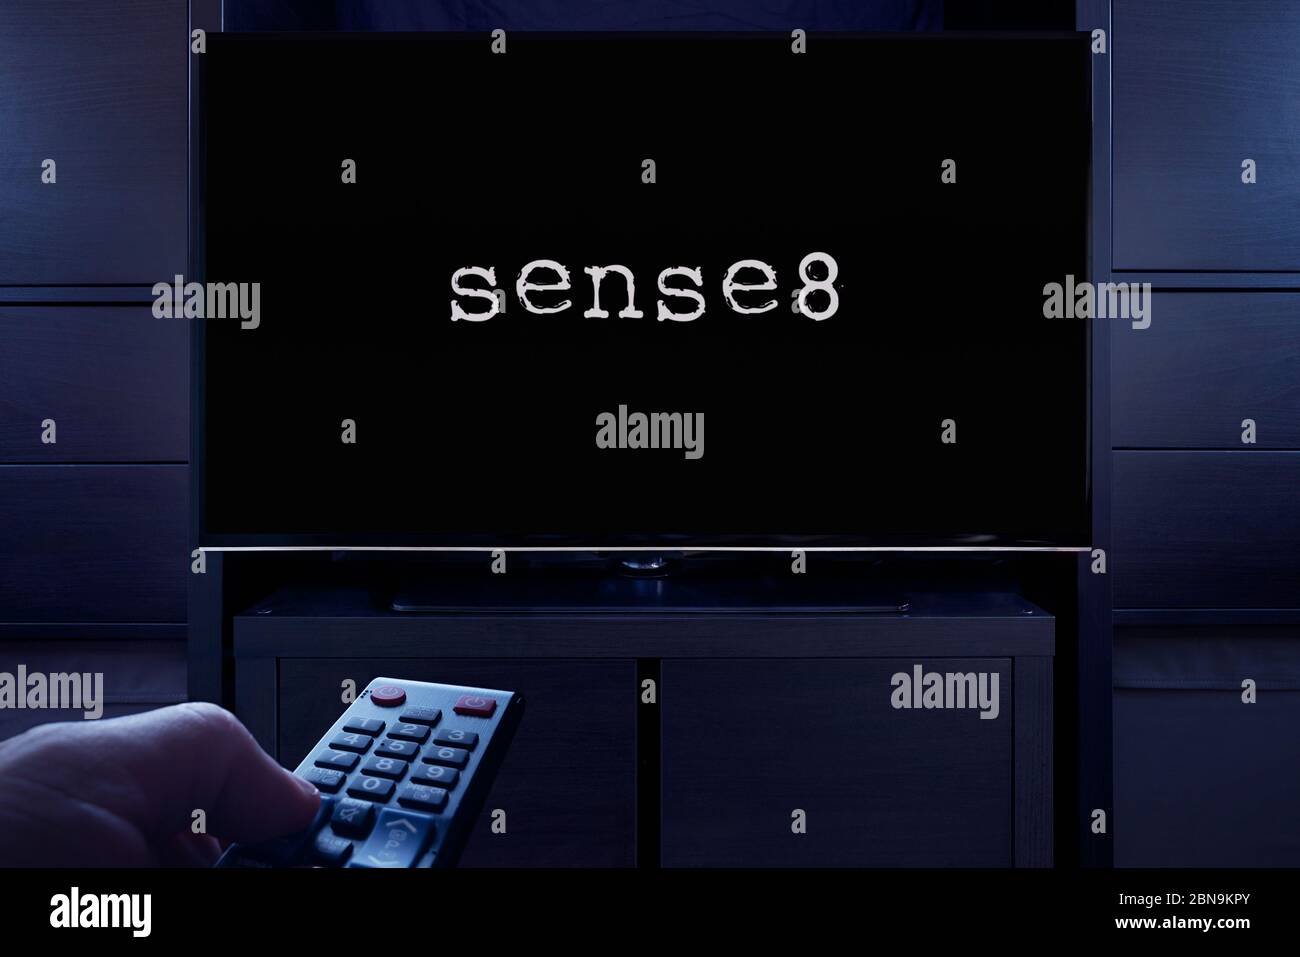 Un hombre apunta un mando a distancia de la televisión al televisor que muestra la pantalla principal del título de Sense 8 (sólo para uso editorial). Foto de stock